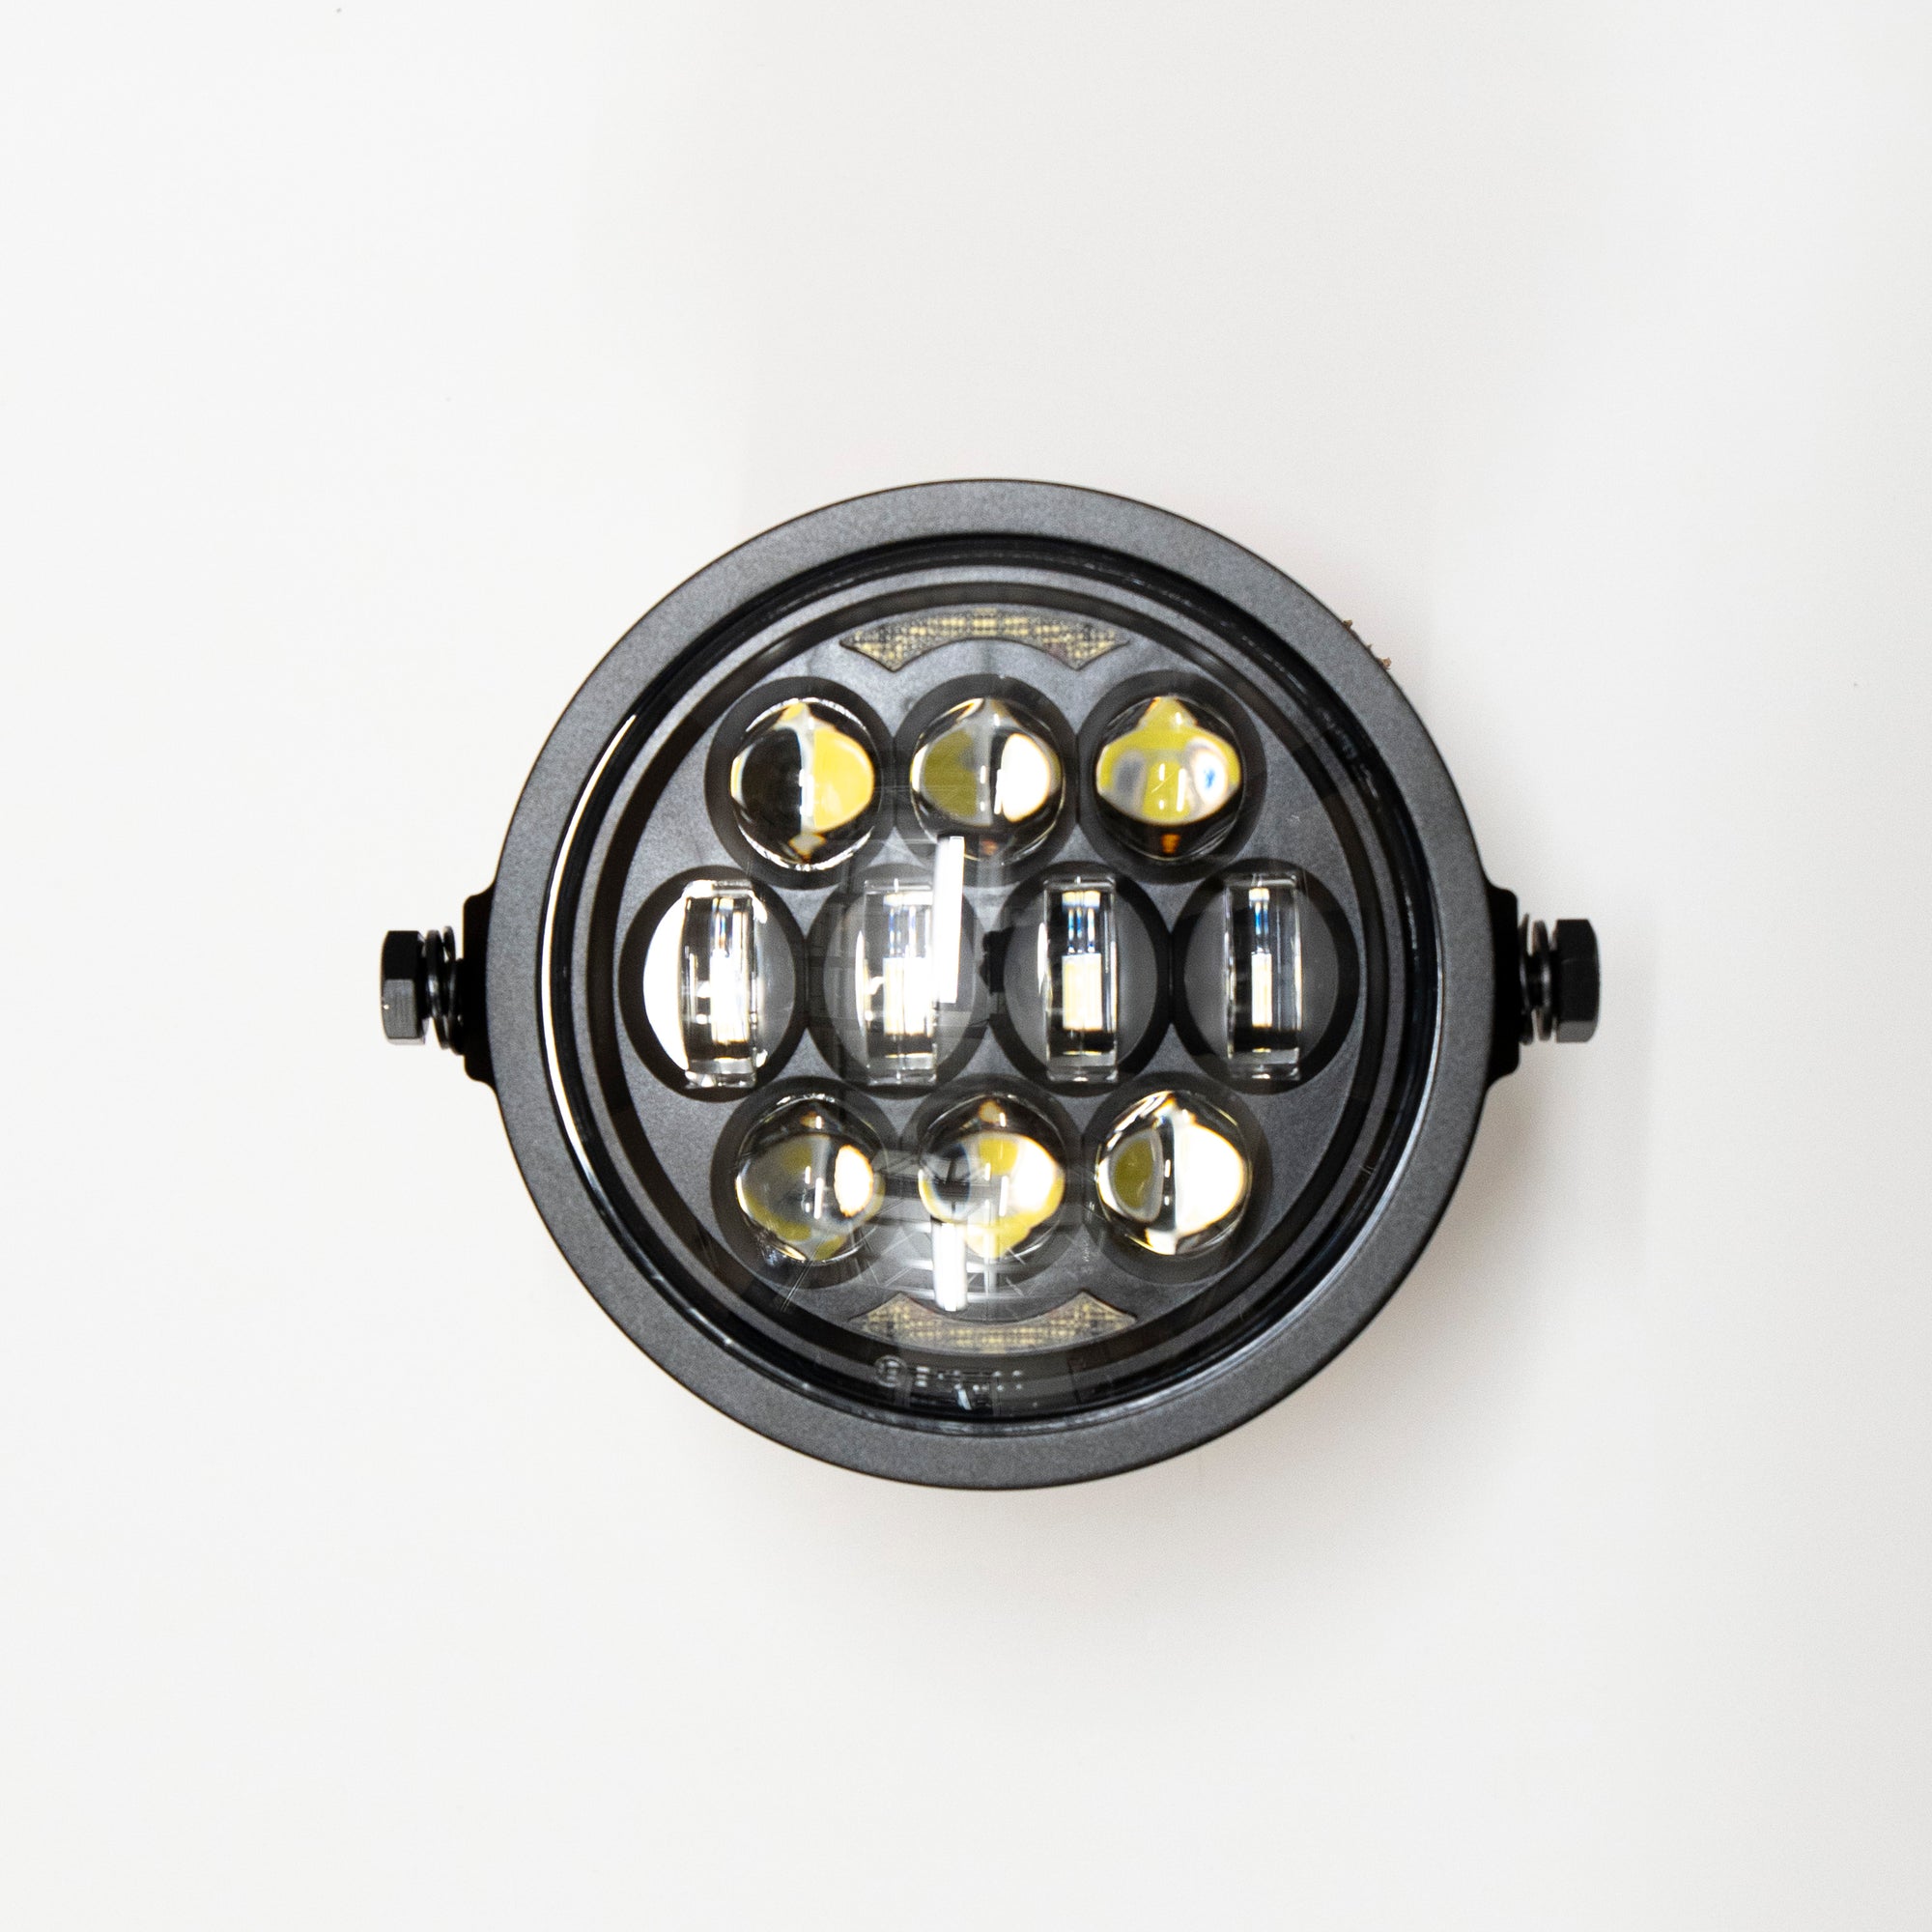 LED Headlight Kit for Super73 - Standard DRL